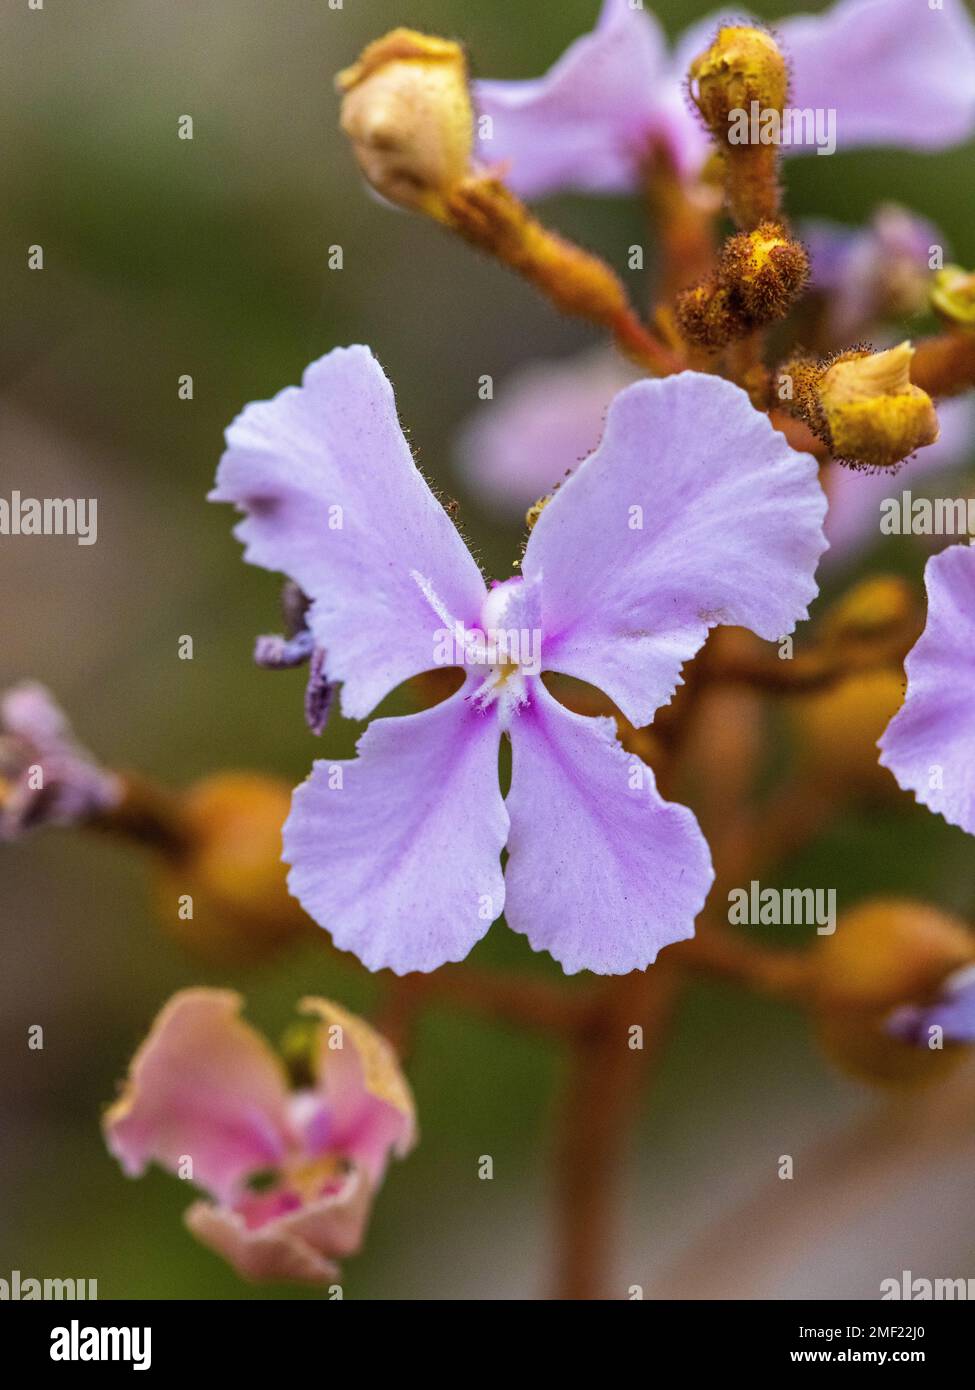 pink Queen triggerplant flower Stylidium affine Stock Photo